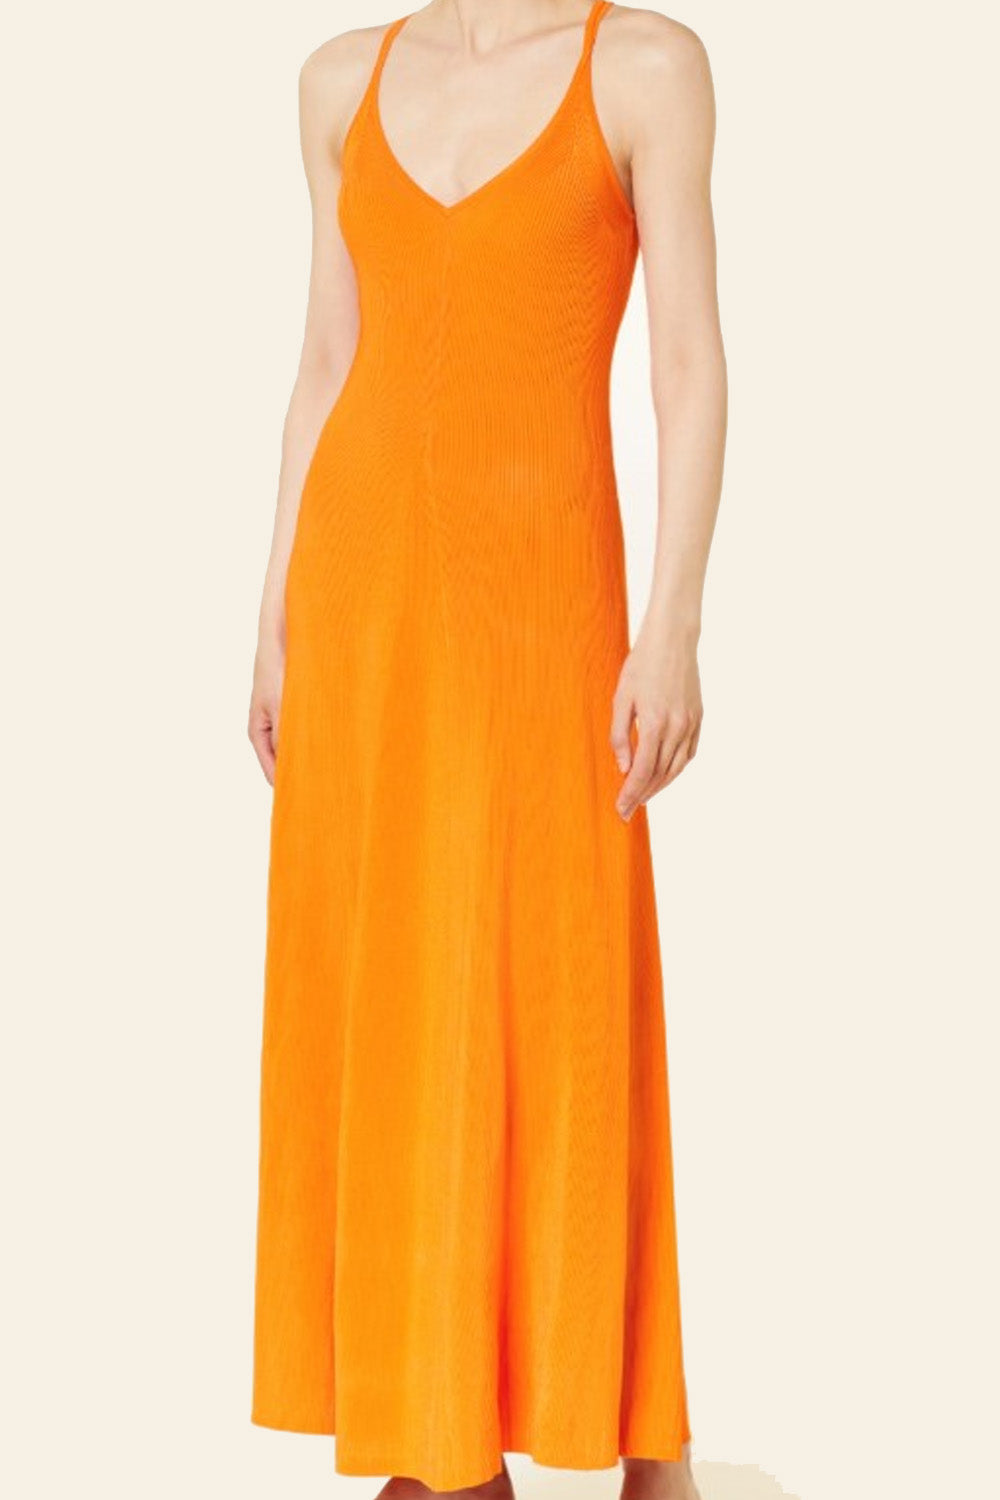 Ecosphere Orange Dress